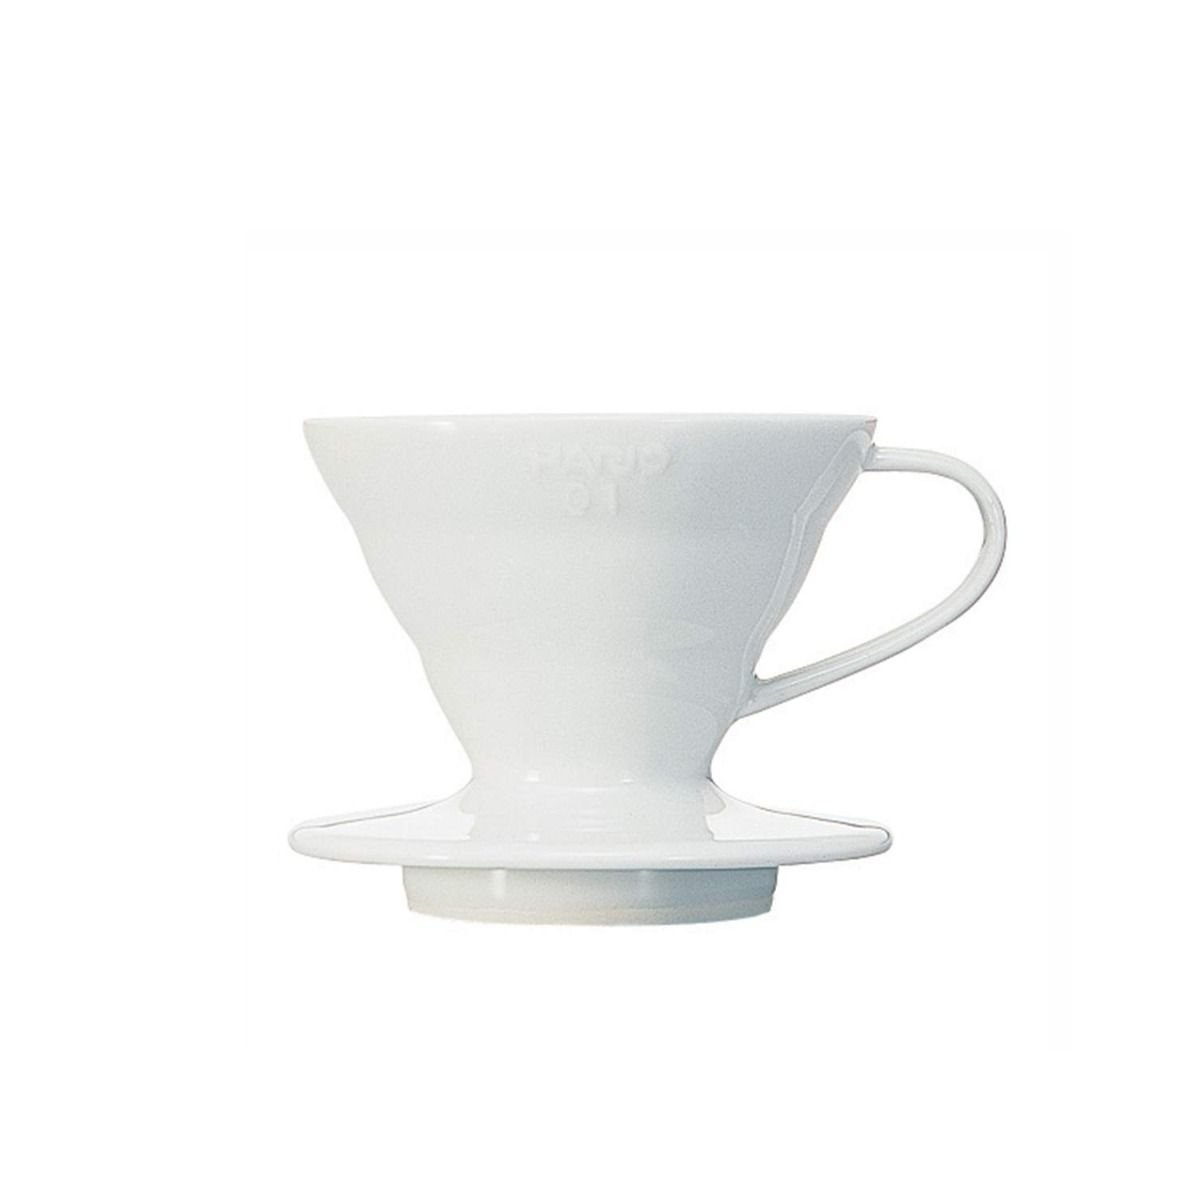 ดริปเปอร์ Hario 01 เซรามิค สีขาว / HARIO(042) V60 Coffee Dripper 01 Ceramic/ White/VDC-01W